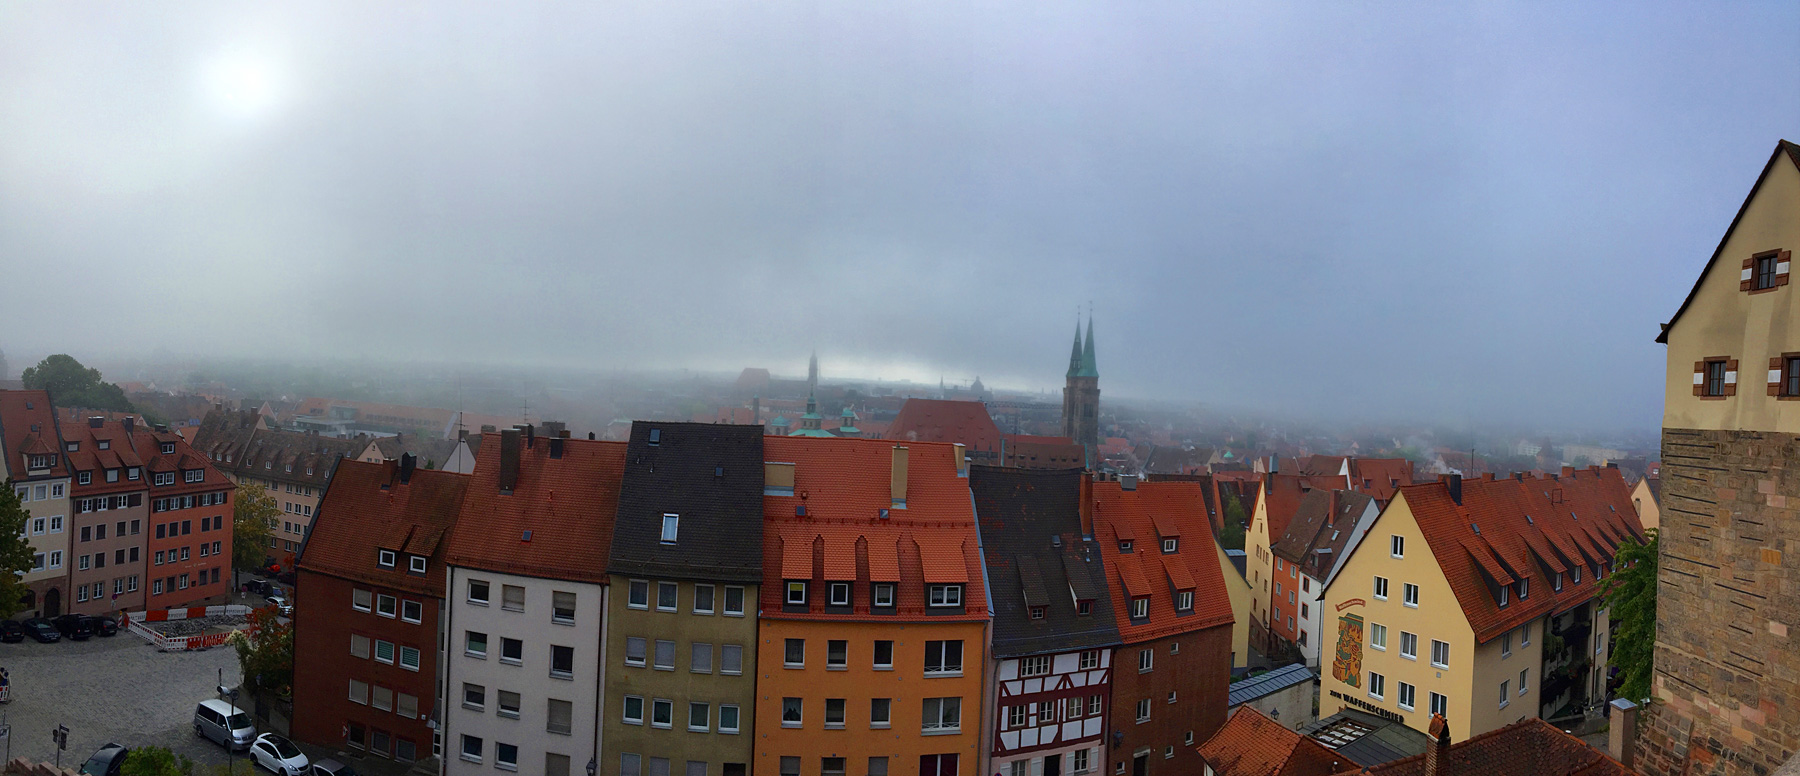 Nuremberg Mists